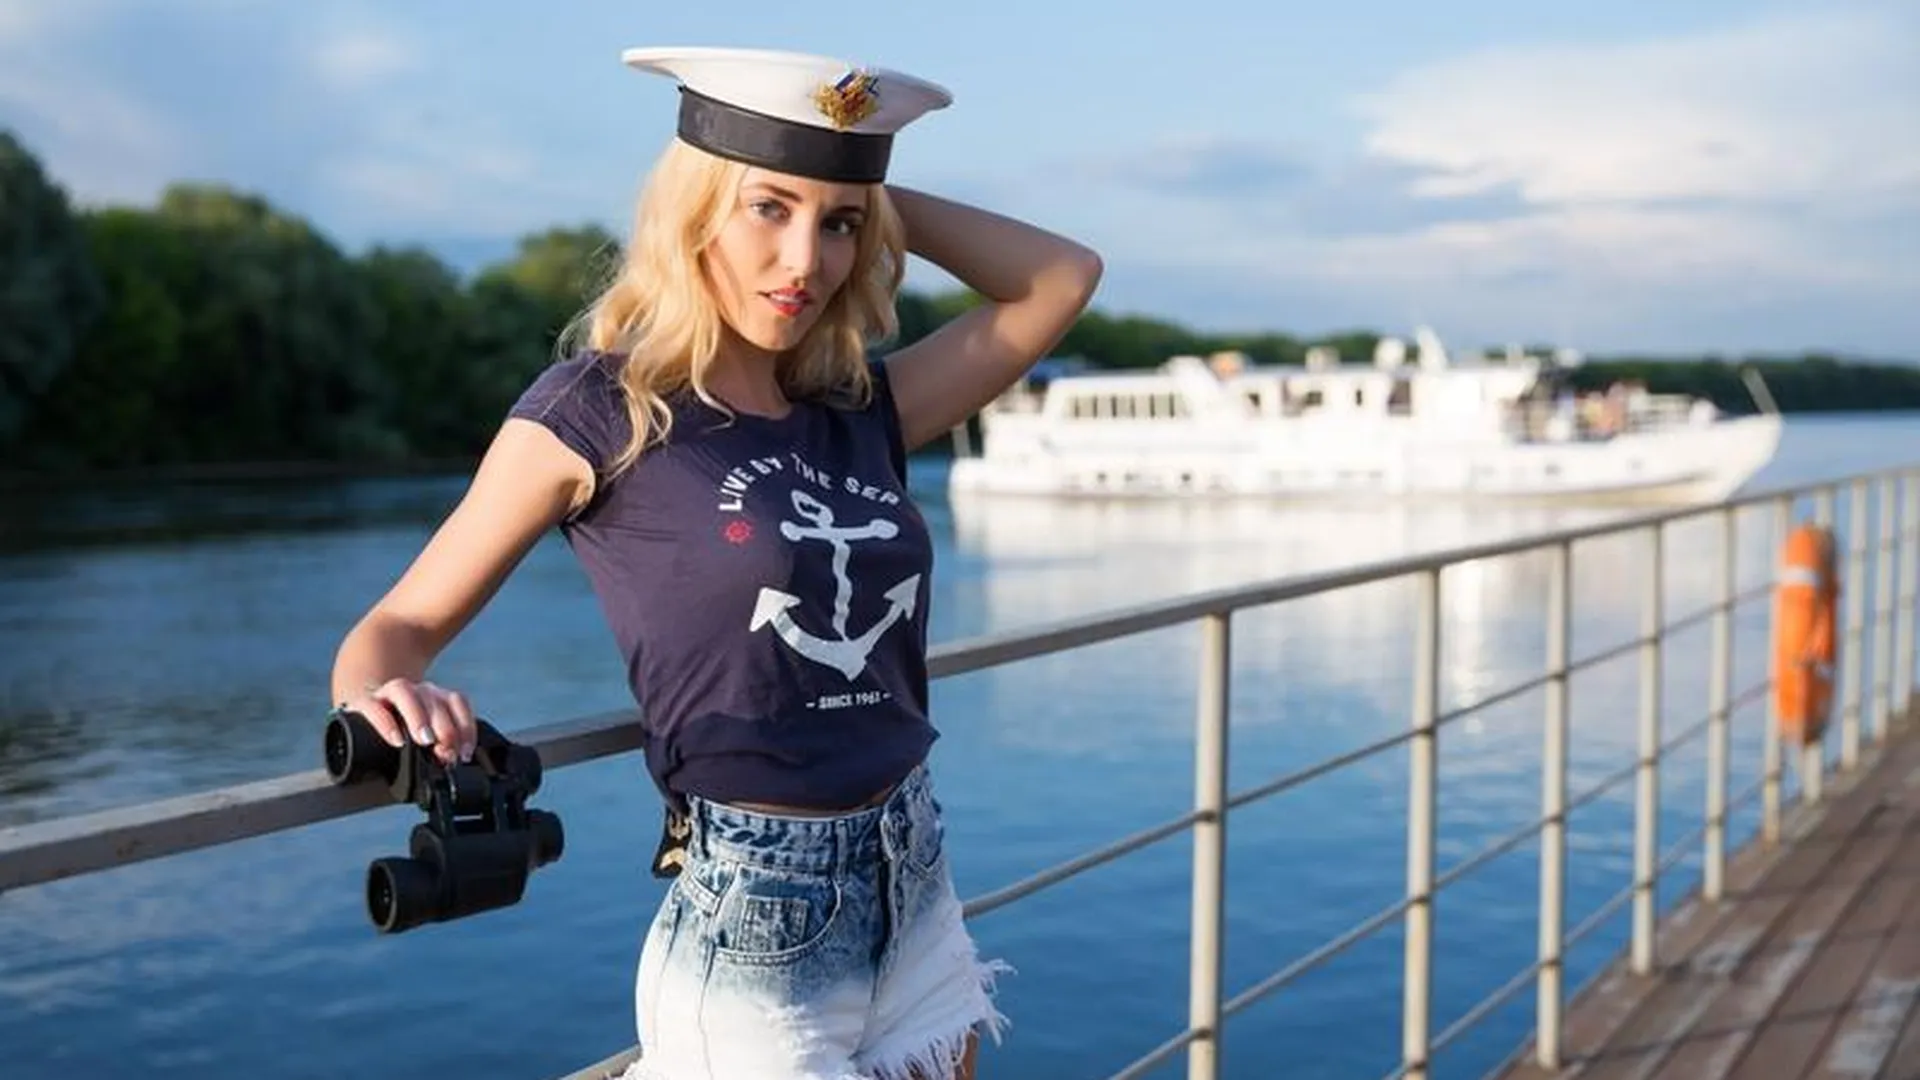 Моделей на съемки проекта «Мисс «Подмосковье сегодня» ищут в Сергиевом Посаде